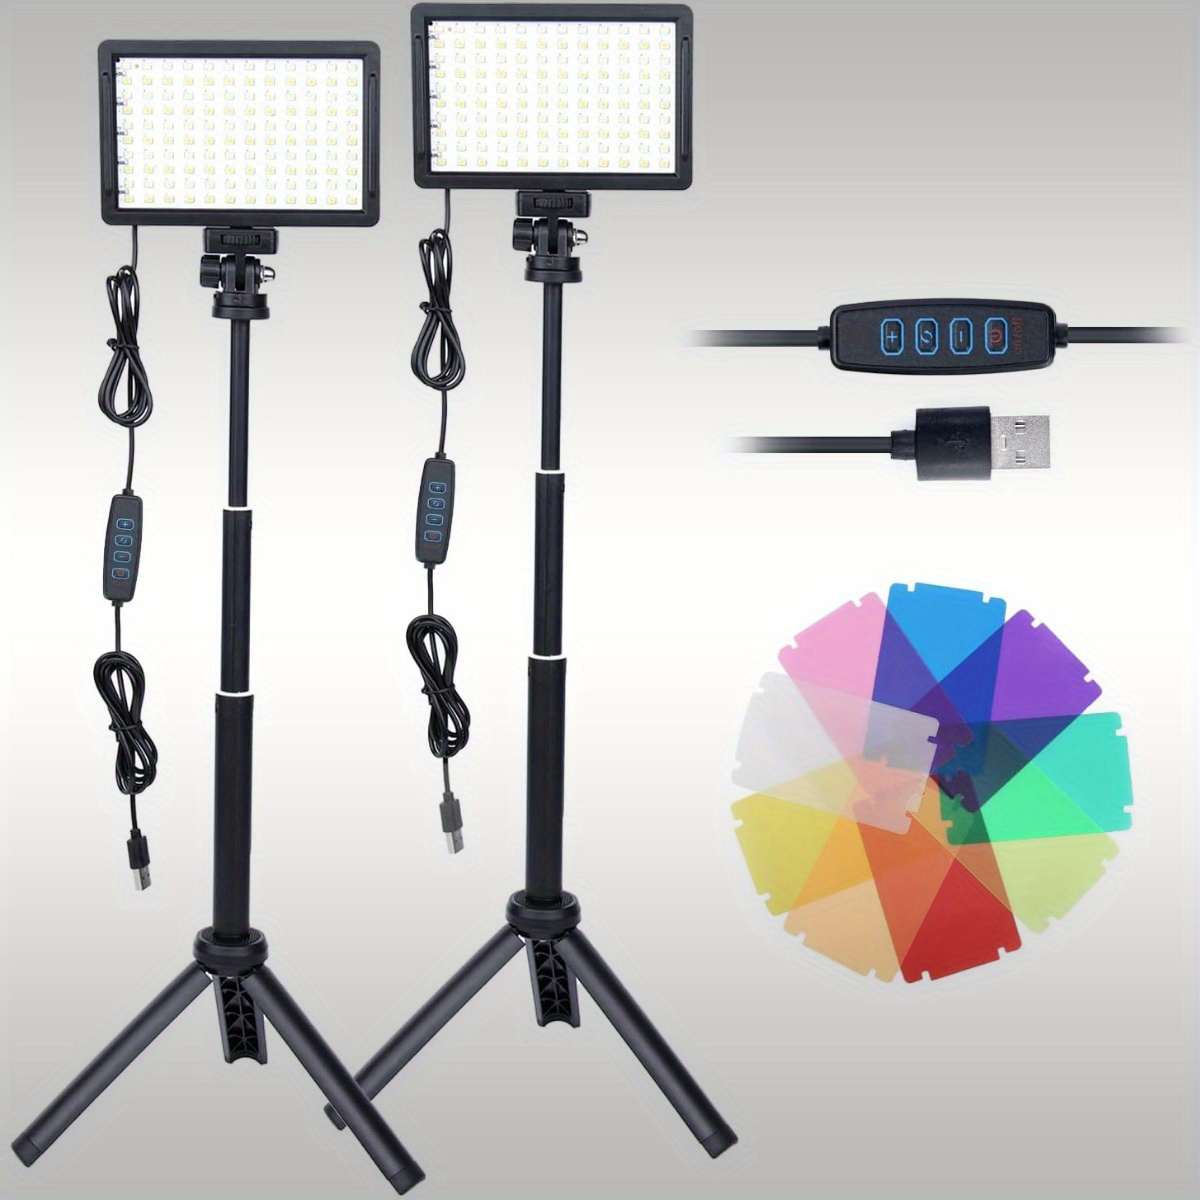 EMART Luz LED de Video 5600k Foco LED Fotografia con Soporte de Trípode y  Filtros de Color, Foco Streaming de 1000LM para Fotografía, Videografía